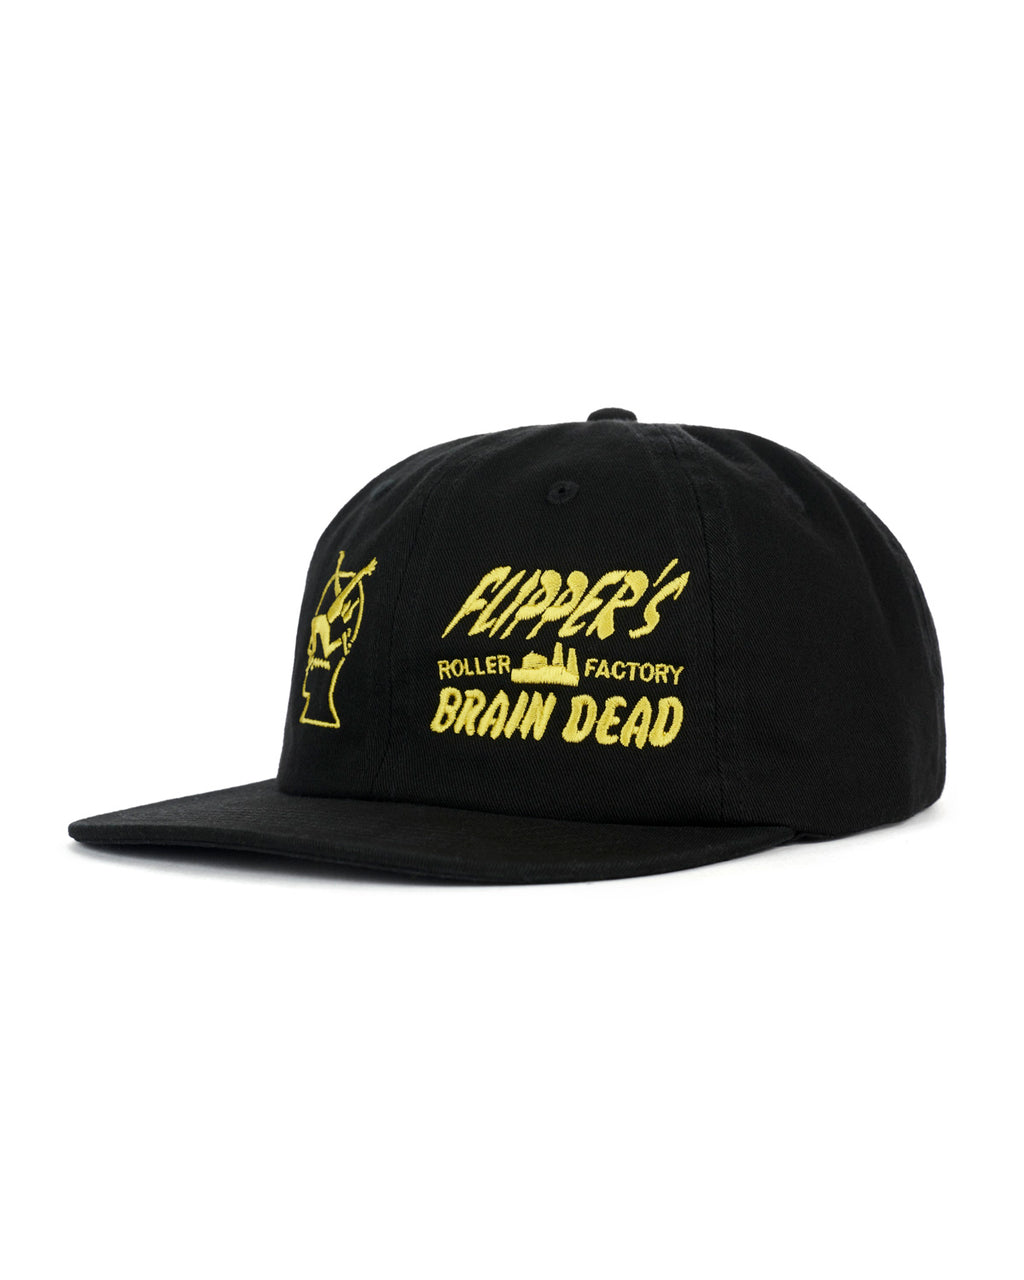 Brain Dead x Flippers Factory Hat - Black 3